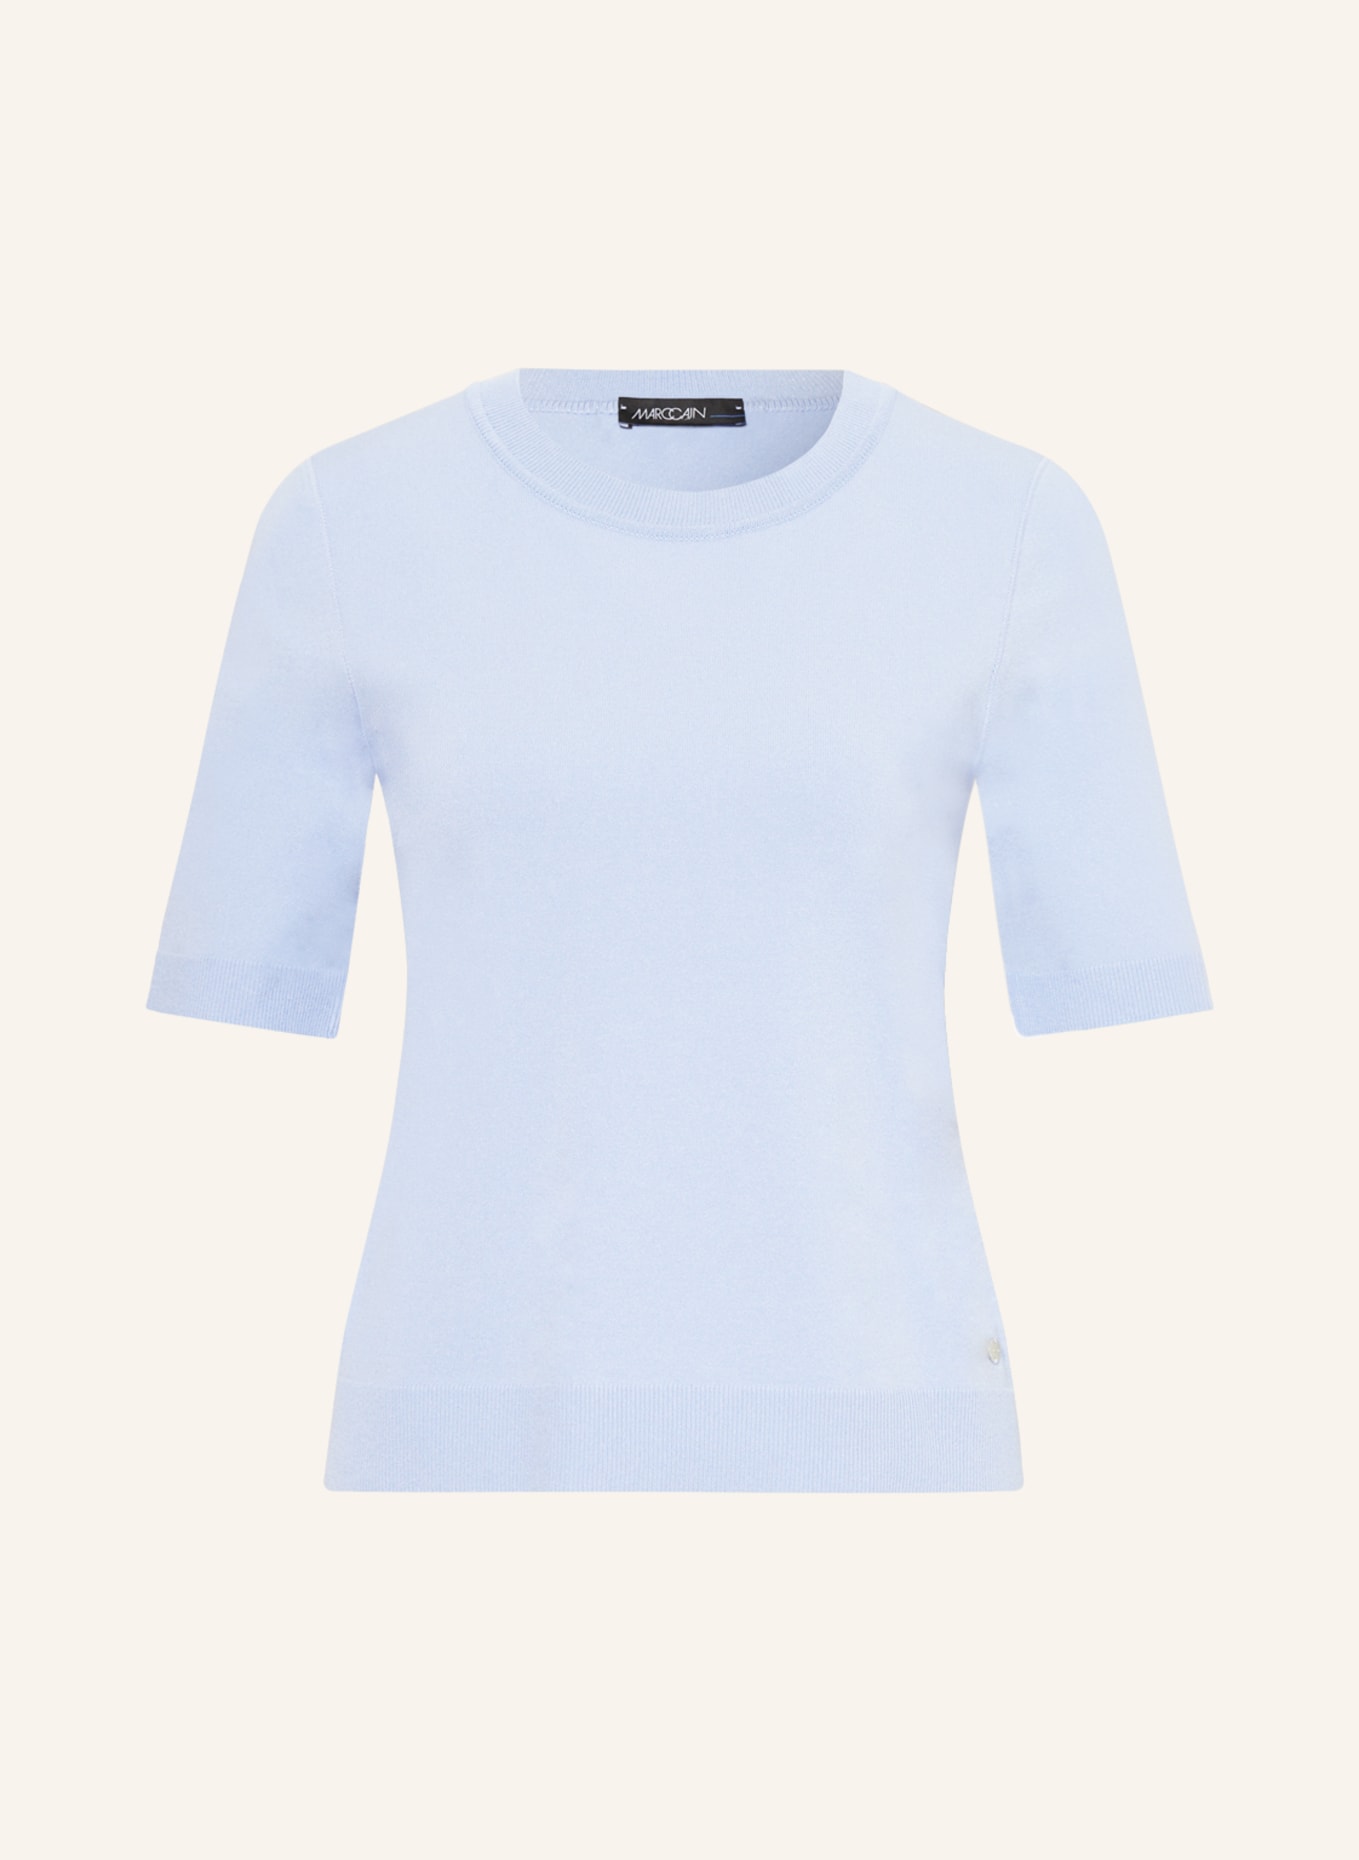 MARC CAIN Knit shirt, Color: LIGHT BLUE (Image 1)